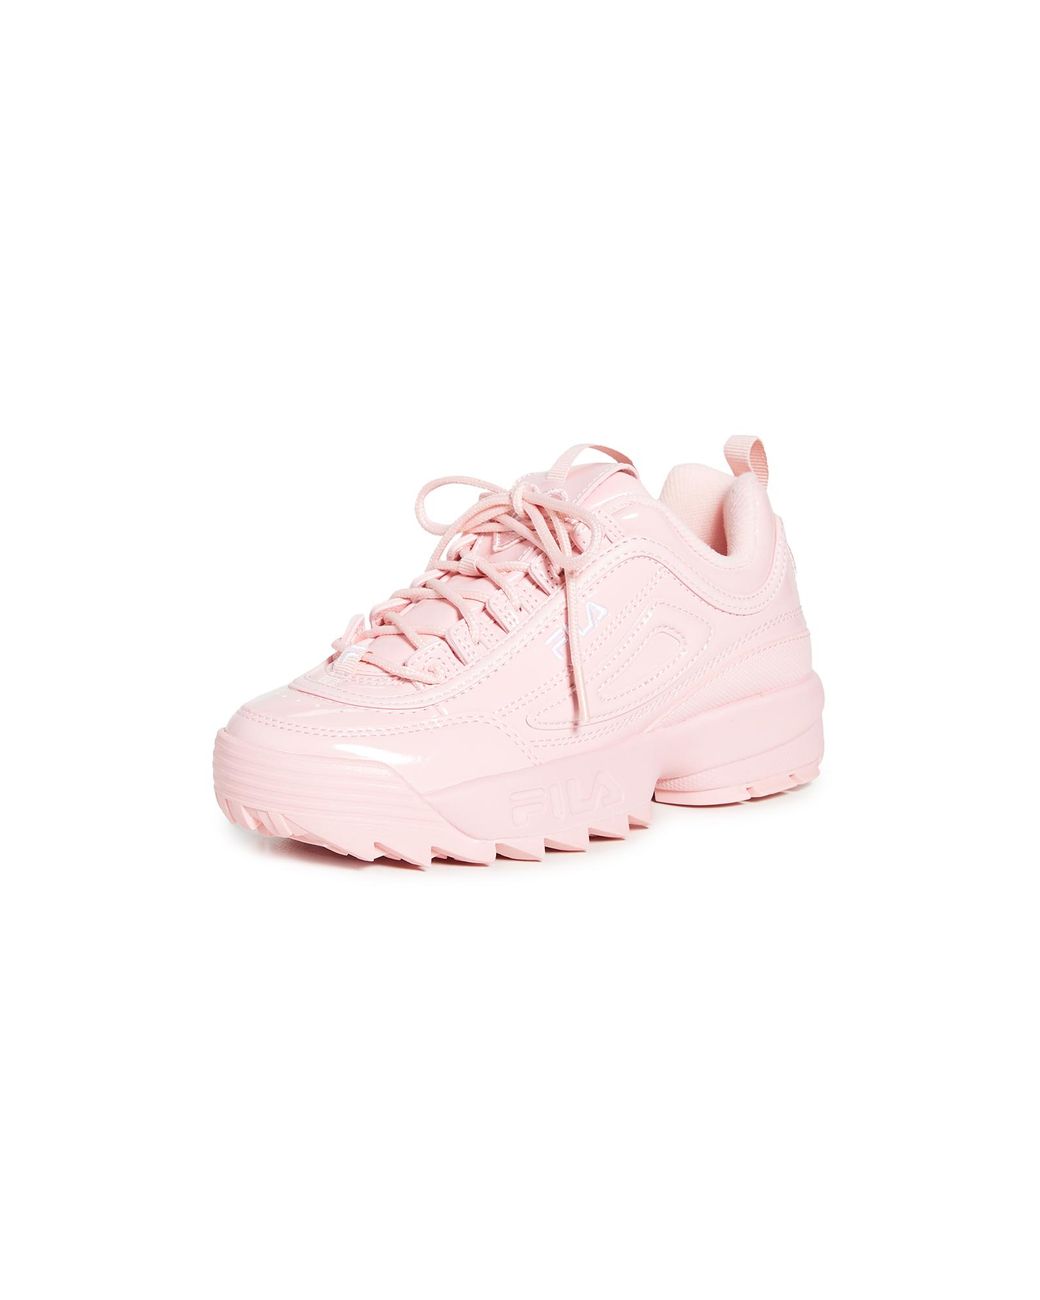 Fila Disruptor Ii Heart Sneakers in Pink | Lyst Canada